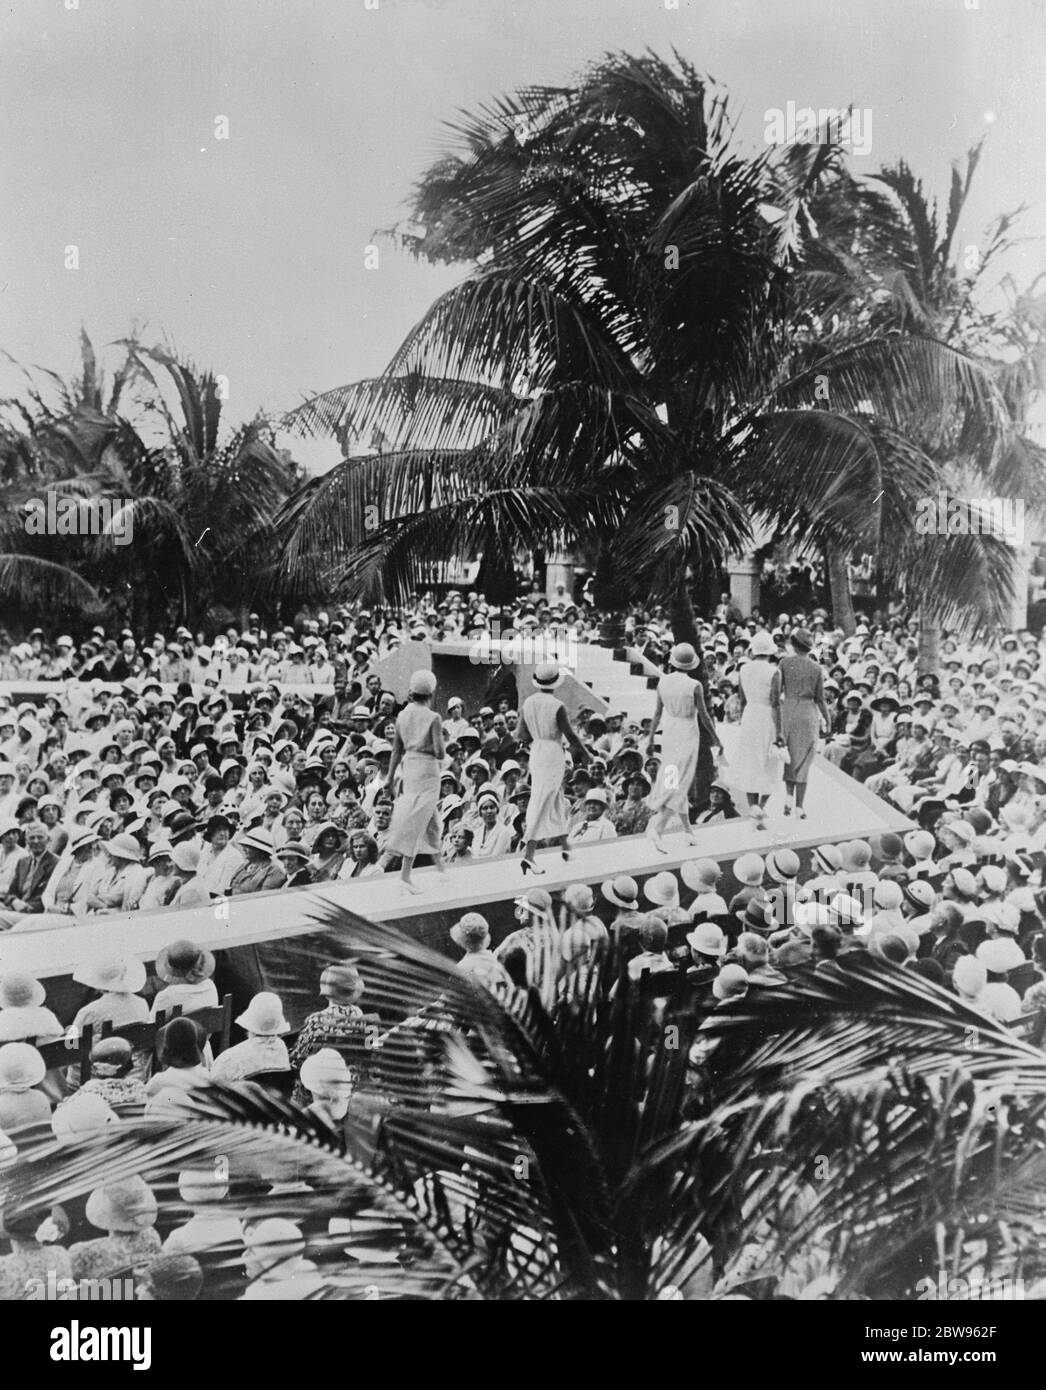 Eine Modeparade im Sonnenschein, während London zittert. Während London und ganz England unter Eis und Schnee zittern, werden in Miami Beech, Florida, Modeparaden in strahlendem Sonnenschein abgehalten. Mannequins Parading vor Sommer gekleideten Massen in den Palmengärten in Miami Beech, Florida. 11 Februar 1932 Stockfoto